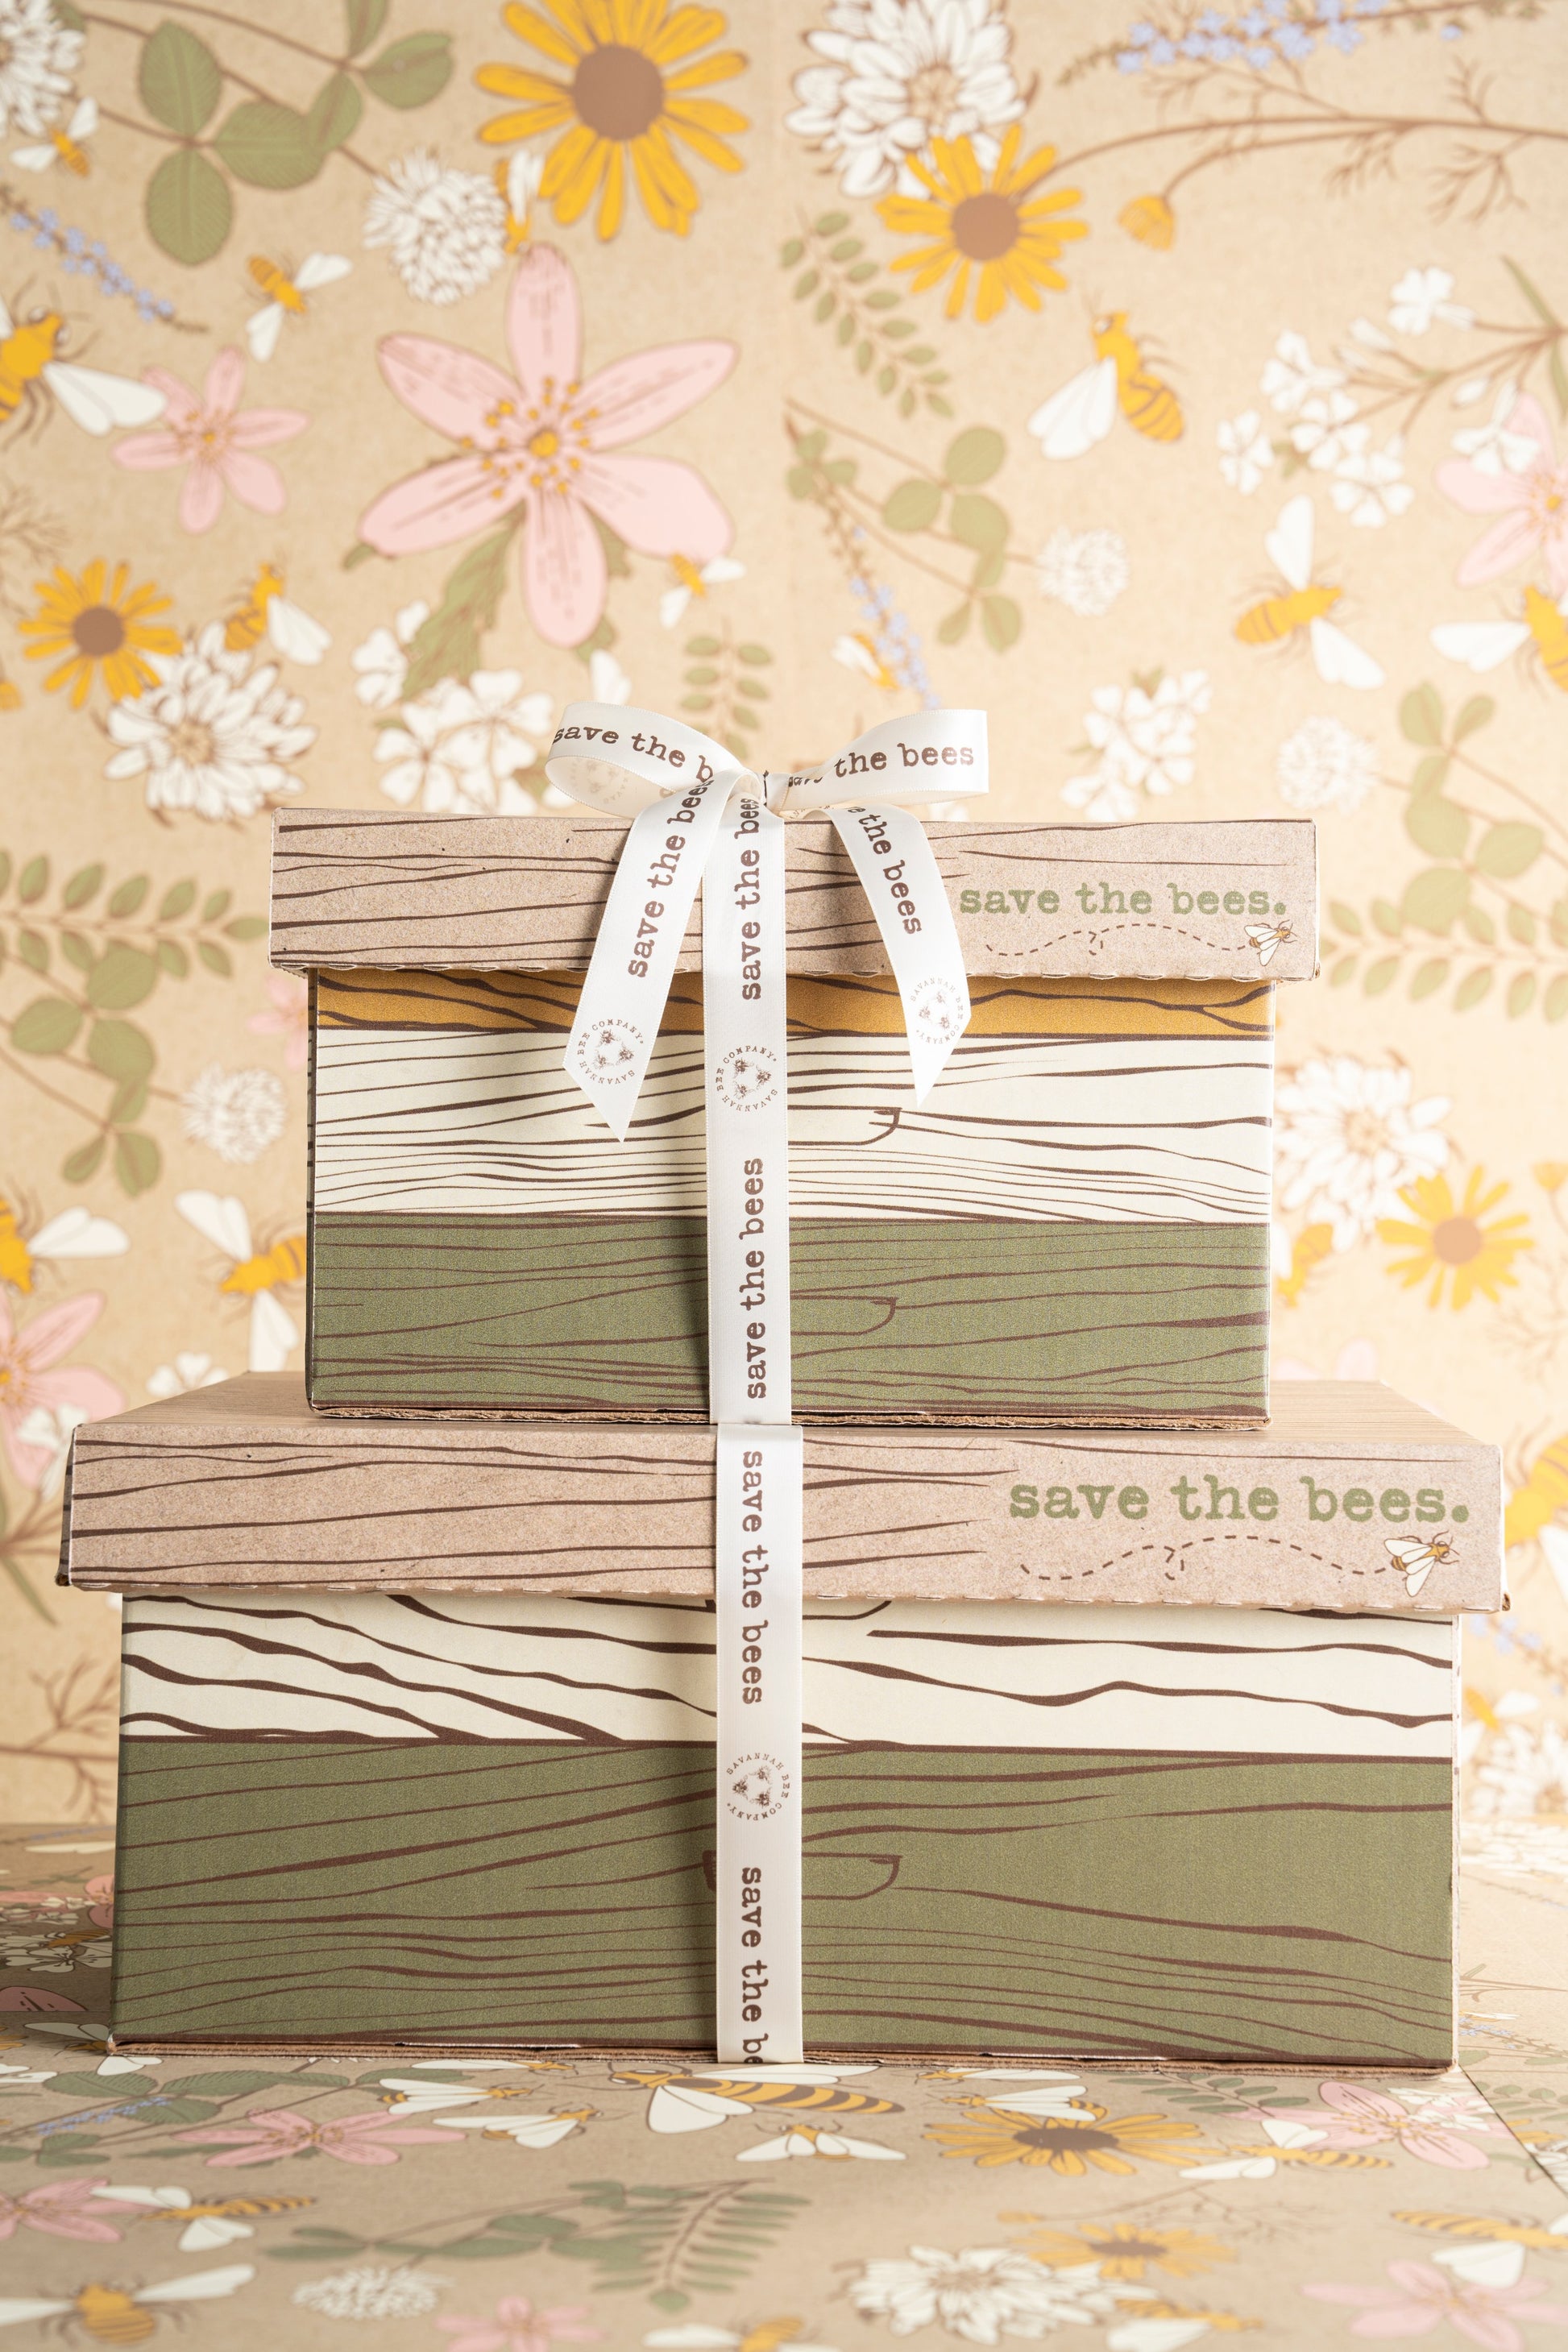 Honey Gift Box Set of 4 – AZ Queen Bee